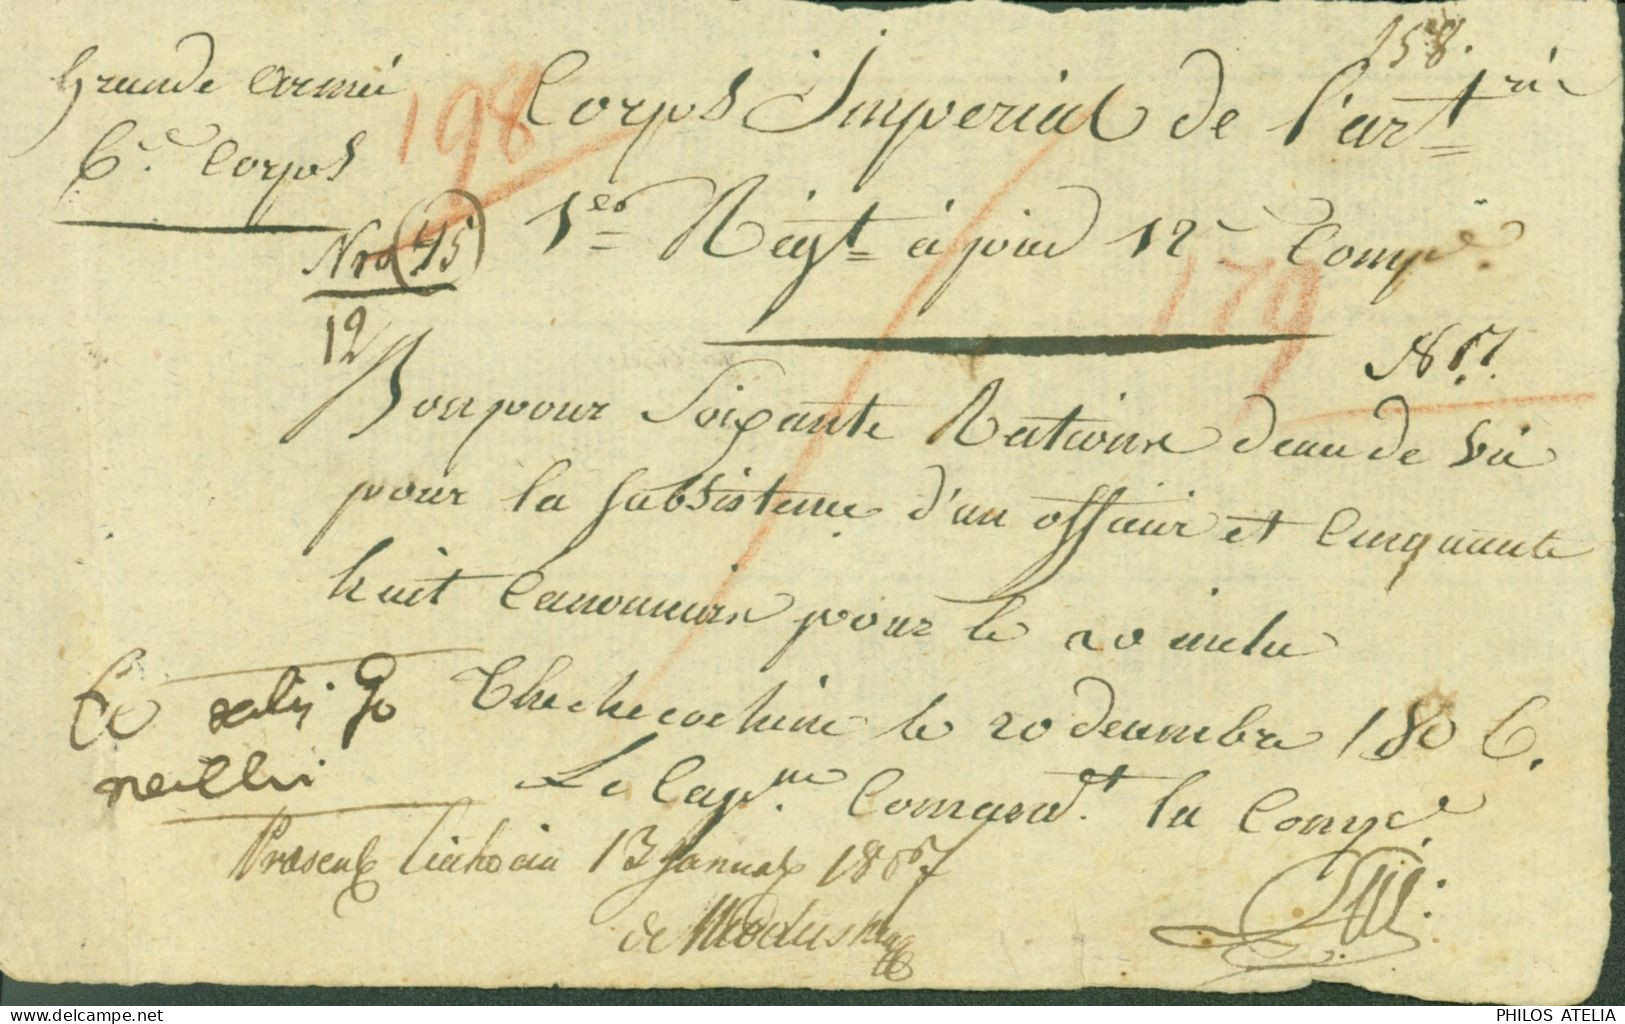 LAS Lettre Autographe Signature Capitaine Thechecoheim 1806 Empire Grande Armée Corps Impérial De L'artillerie - Politico E Militare